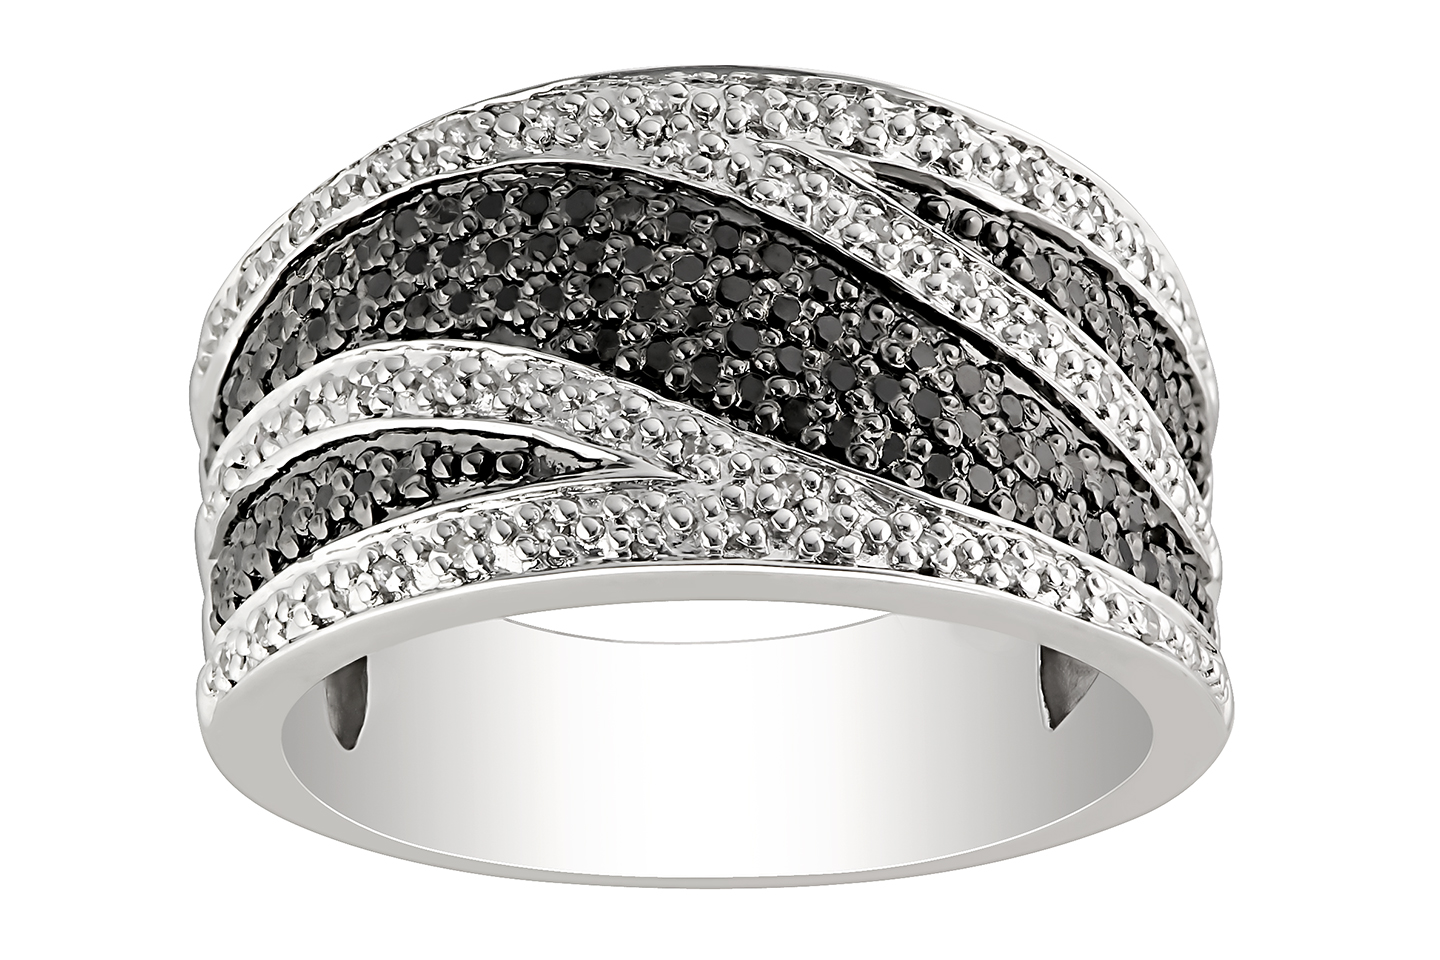 Diamond Jewelry Wallpaperwedding Rings Tags Black White Diamond ...